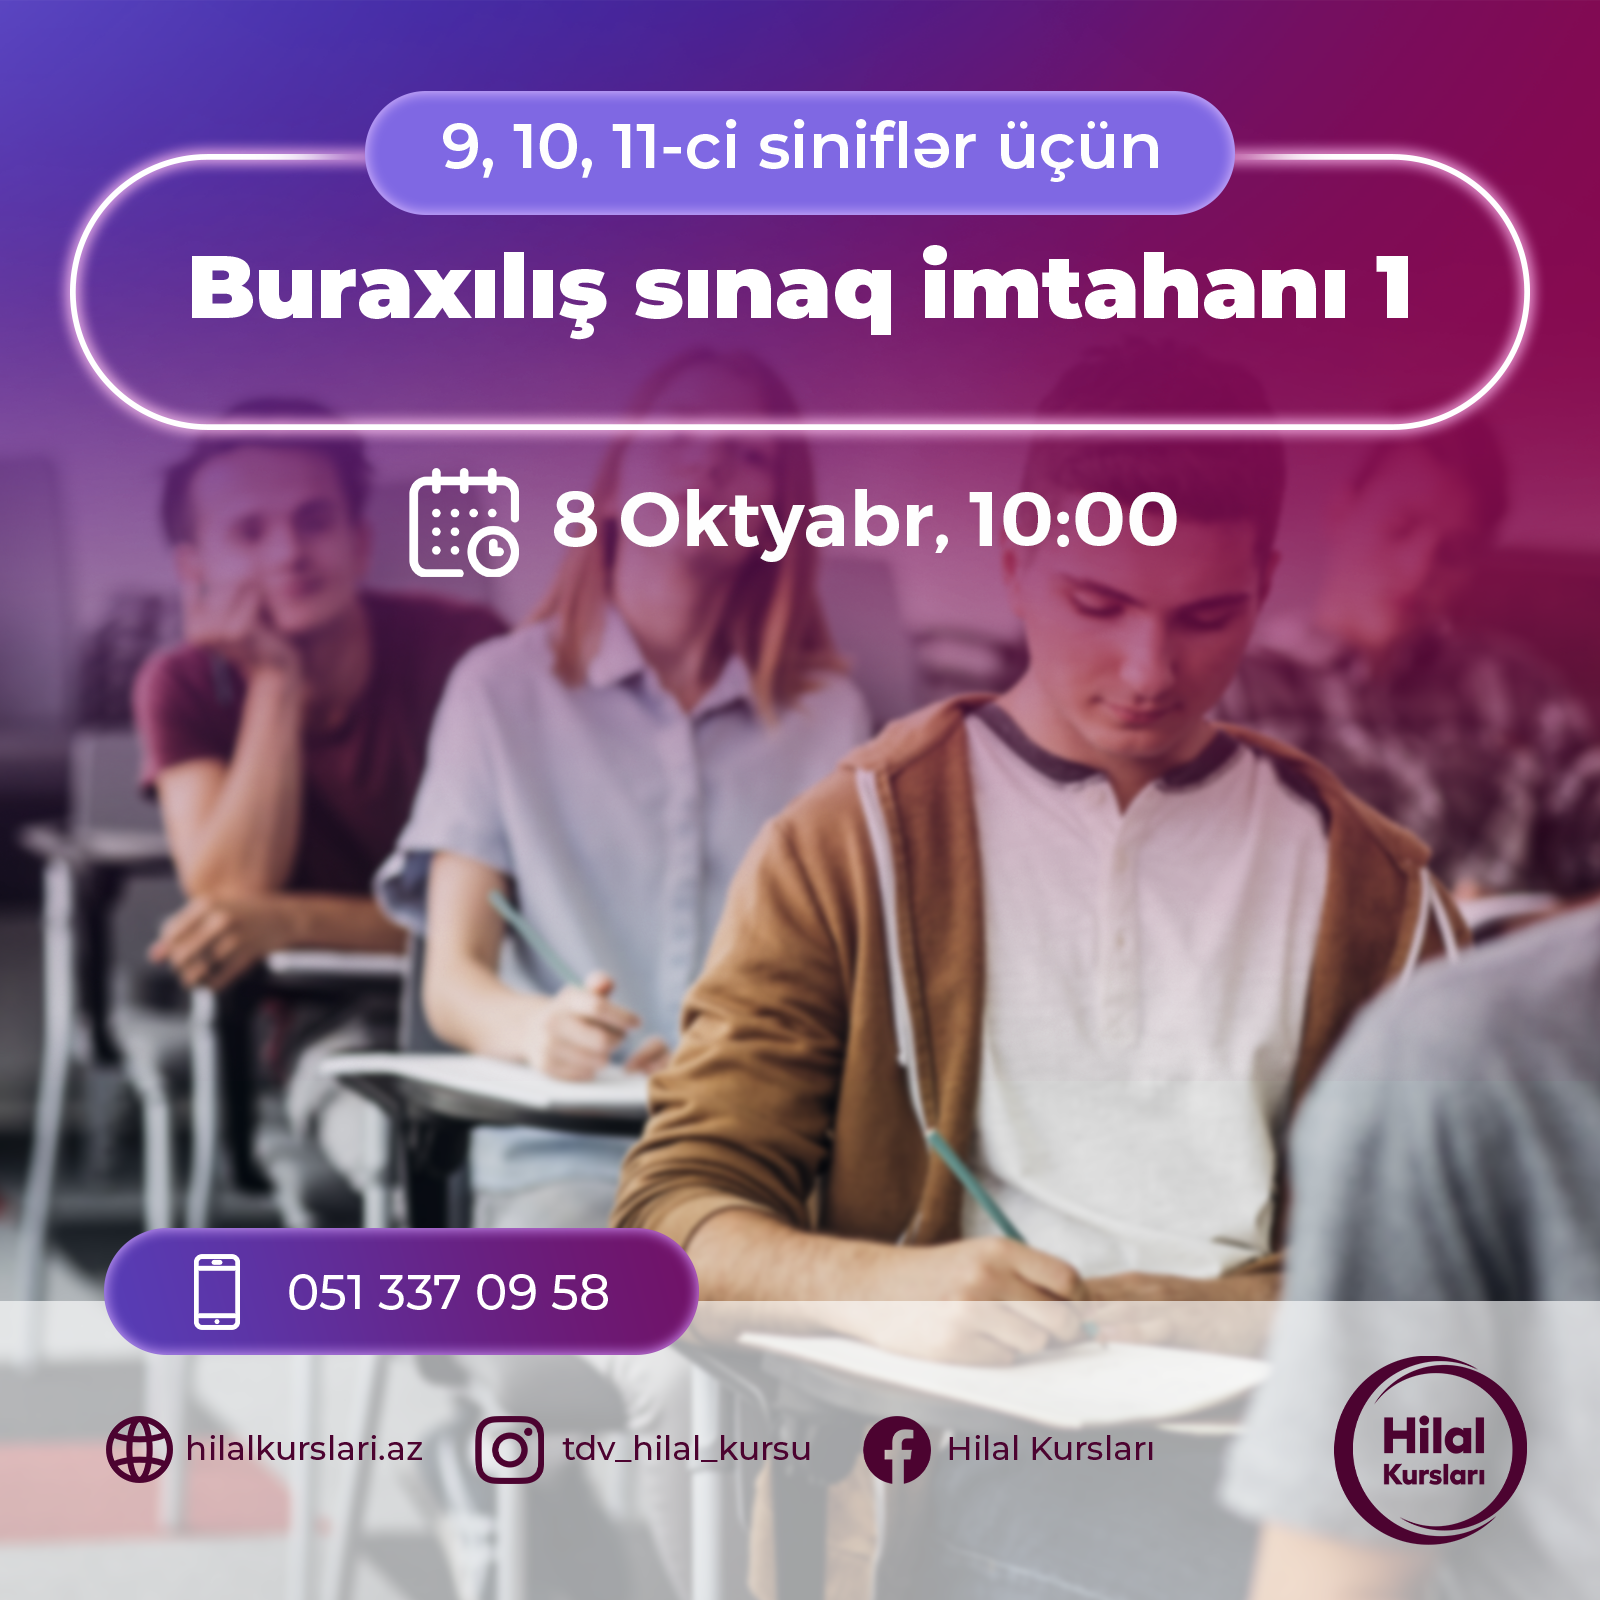  Buraxılış Sınaq İmtahanı - 1 (_9, 10 Və 11-Ci Sinif_) biletlərini əldə edə bilərsiniz.